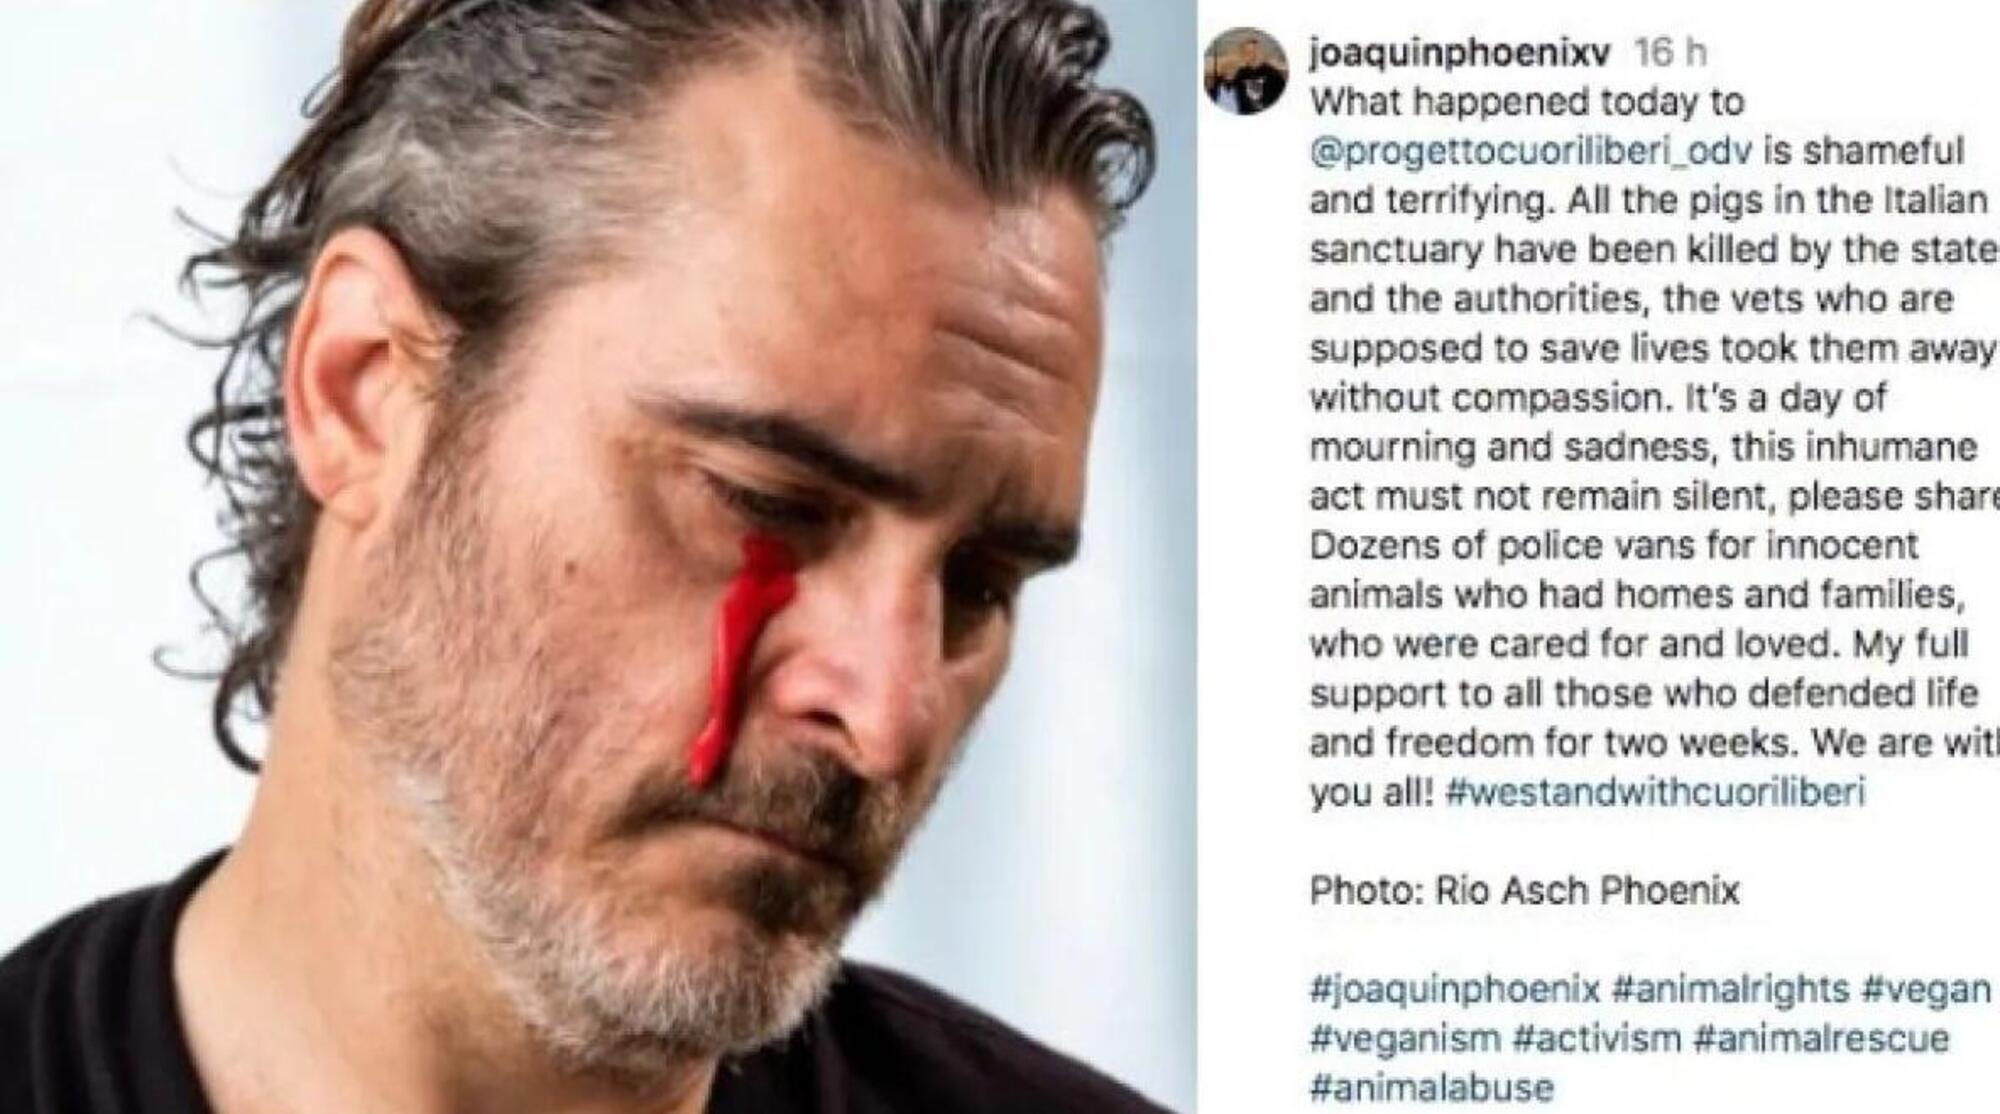 La lacrima versata da Joaquin Phoenix per i maiali